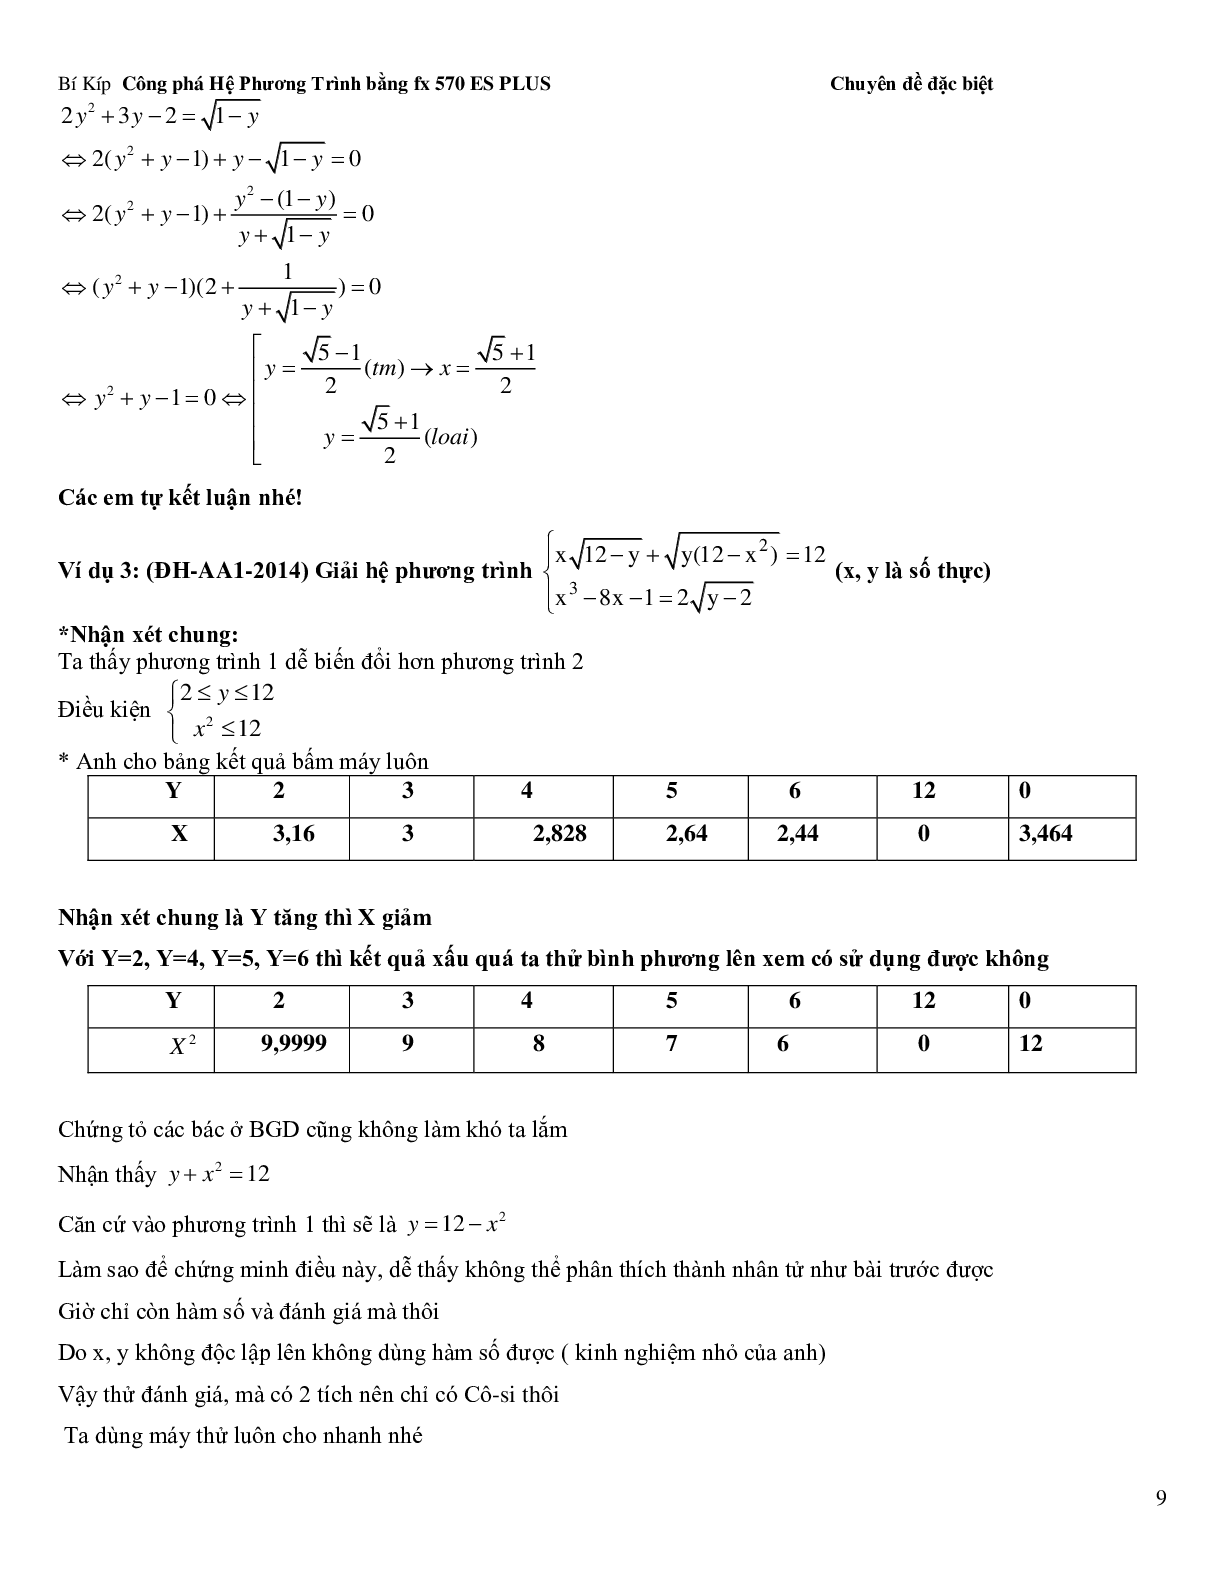 Bí kíp để giải hệ phương trình bằng Casio (trang 9)